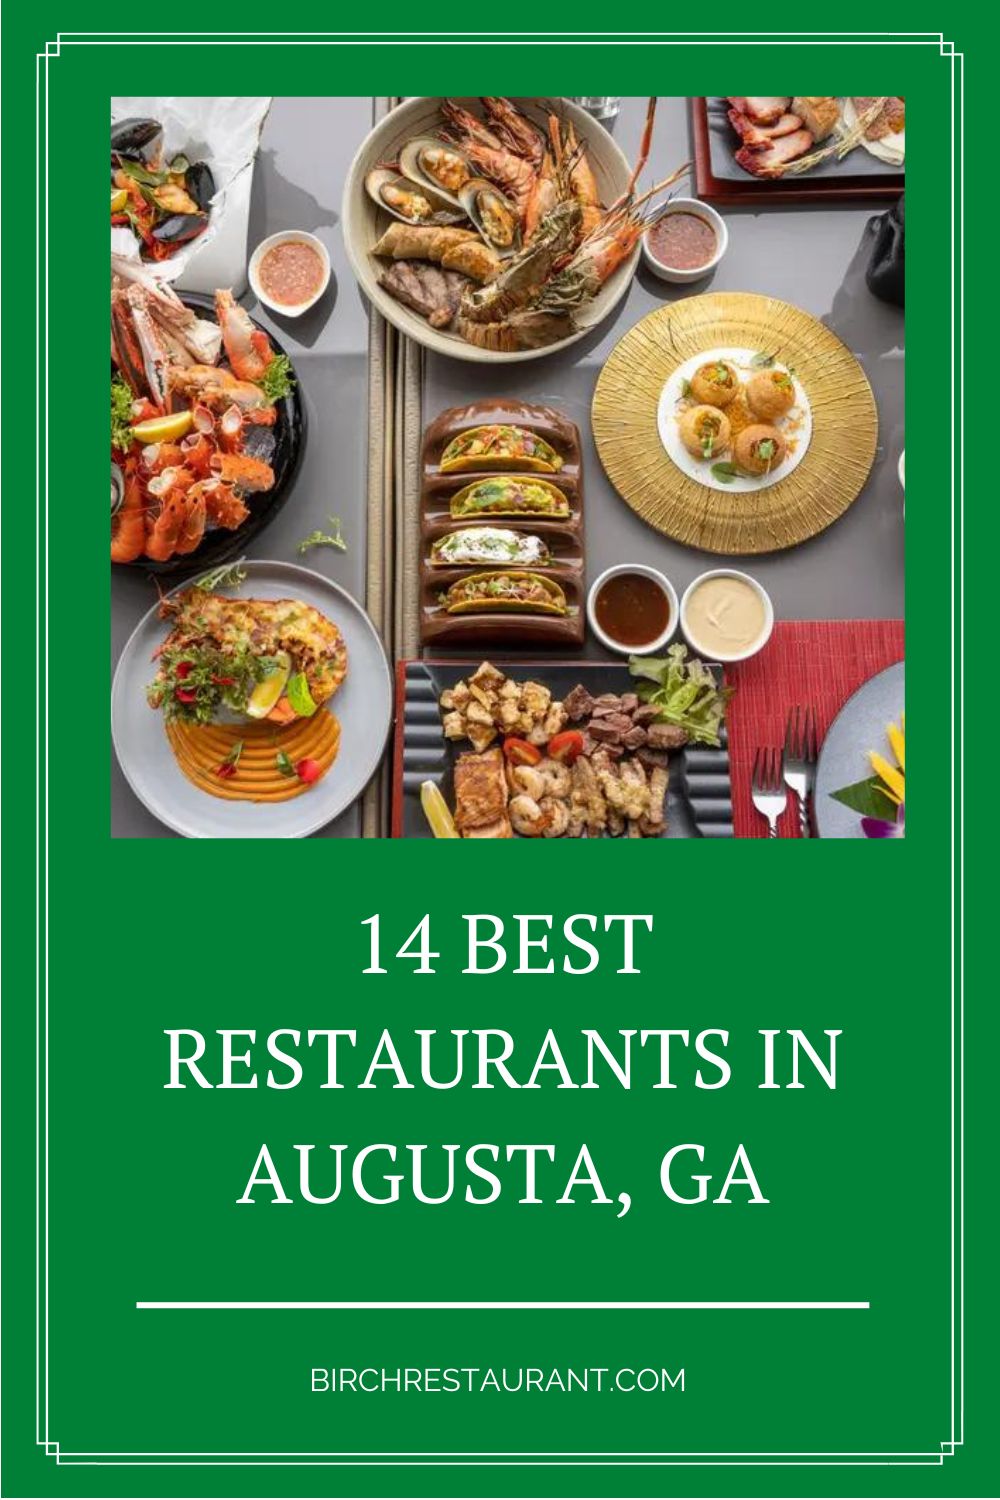 Best Restaurants in Augusta